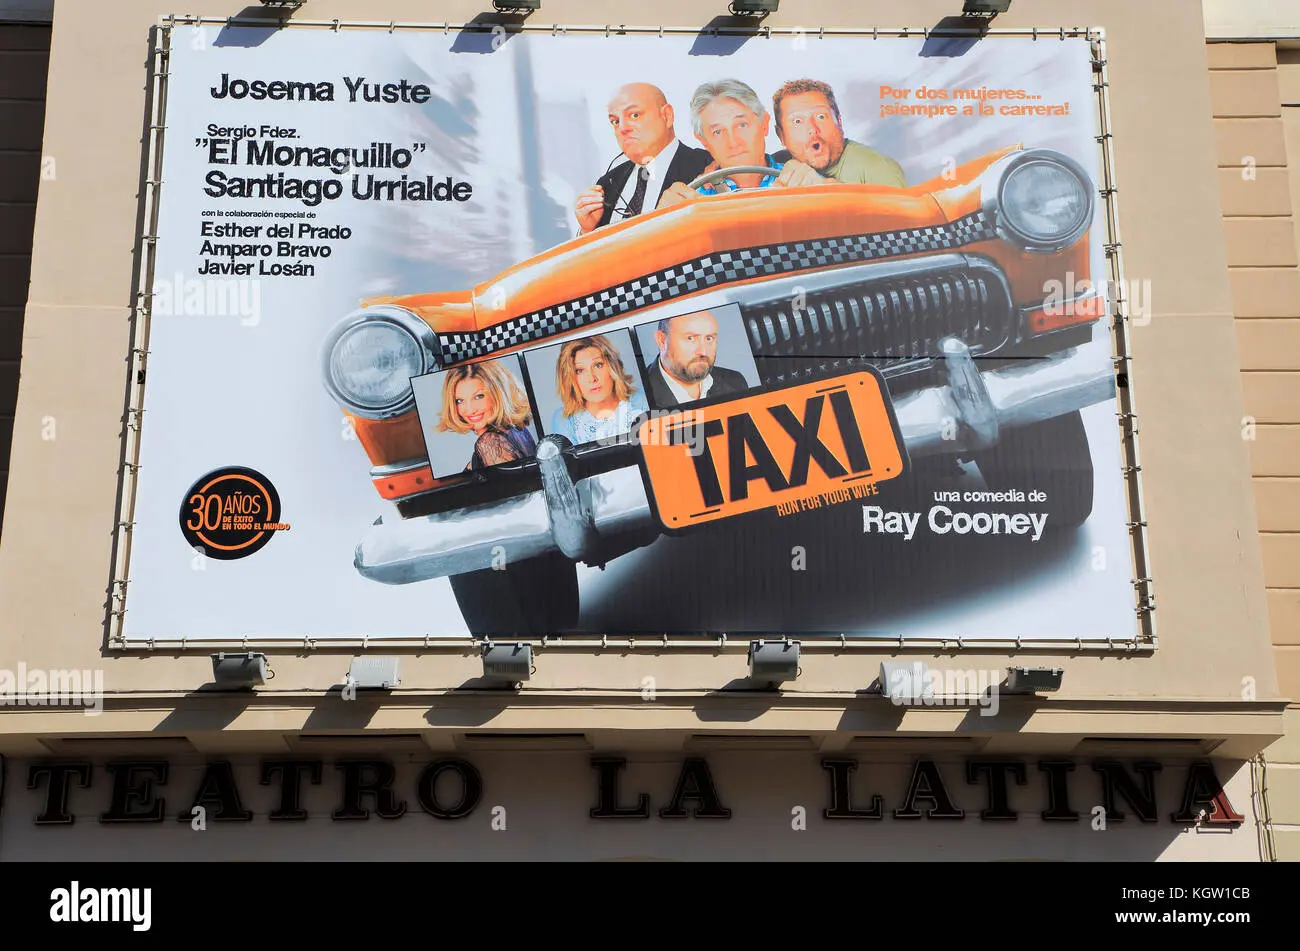 taxi teatro latina - Quién es el dueño del teatro de La Latina